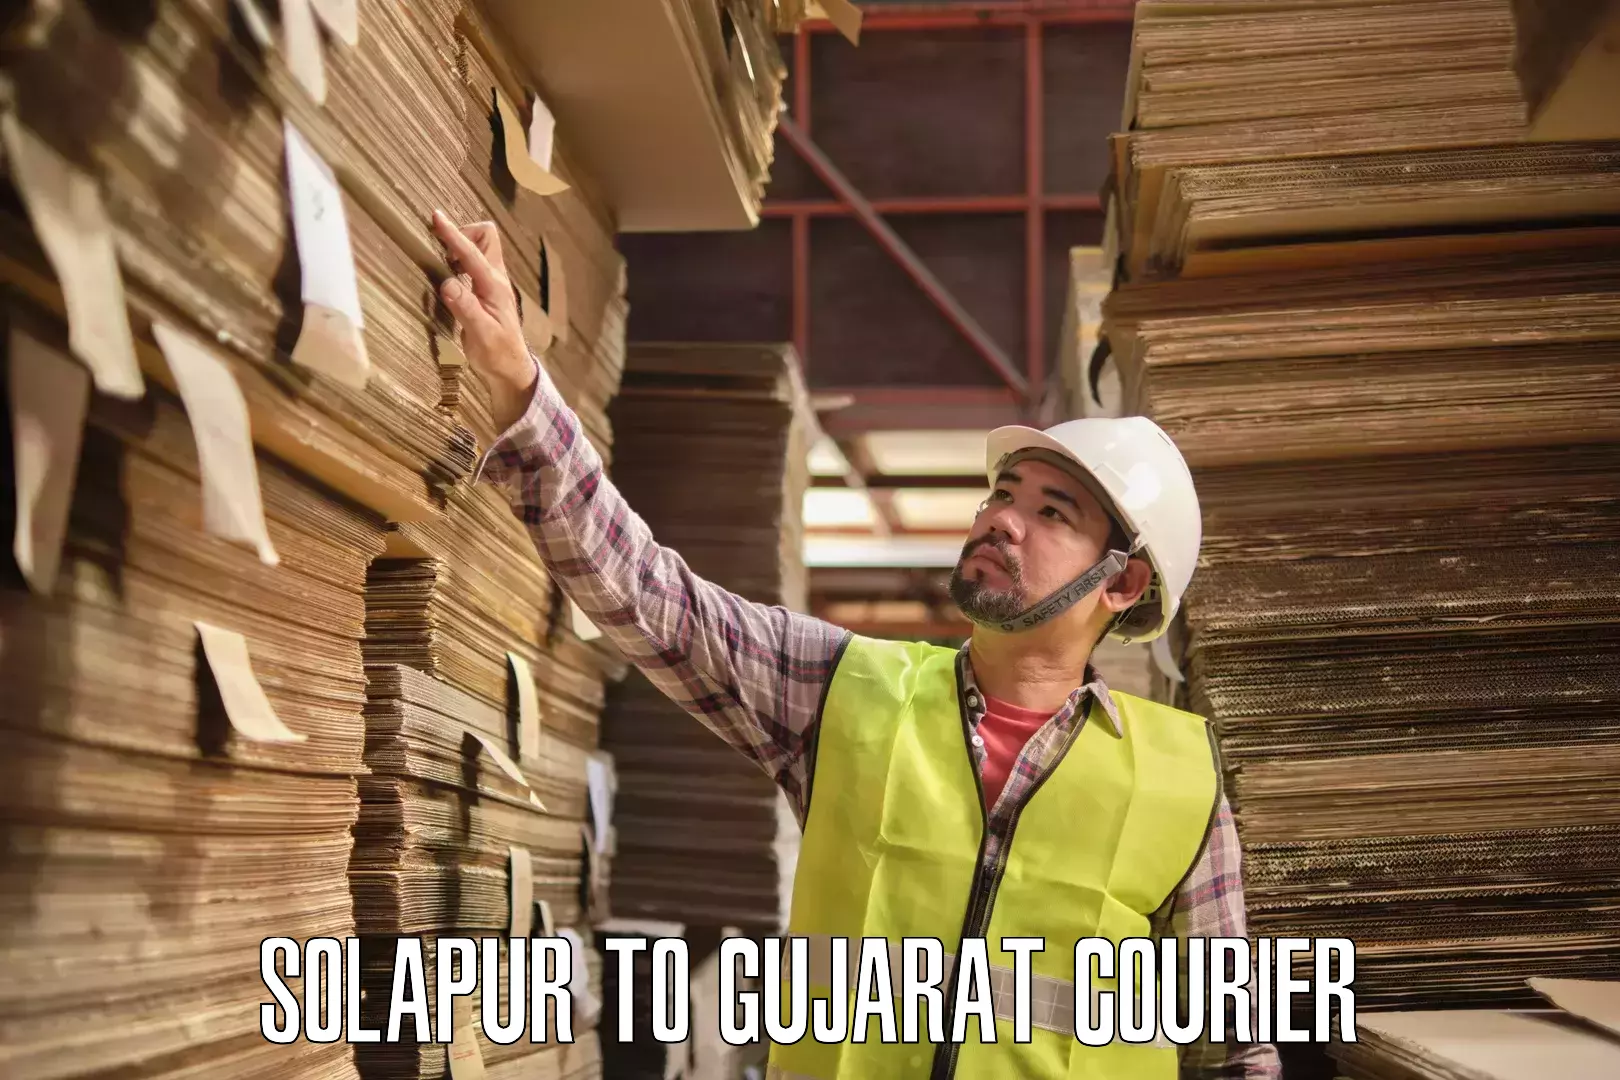 Nationwide shipping coverage Solapur to Vapi